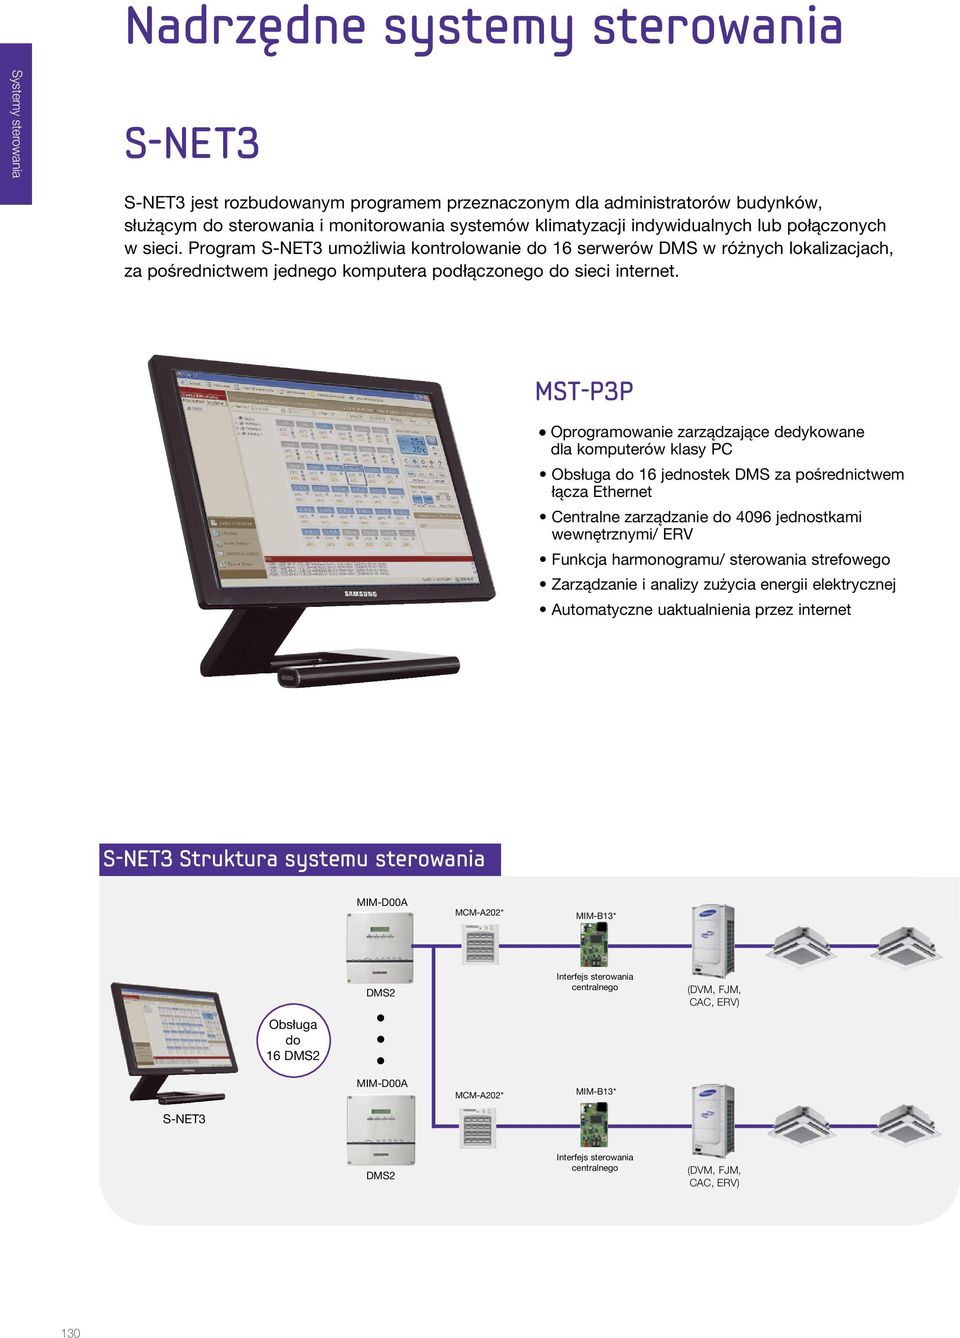 MST-P3P l Oprogramowanie zarządzające dedykowane dla komputerów klasy PC Obsługa do 16 jednostek DMS za pośrednictwem łącza Ethernet Centralne zarządzanie do 4096 jednostkami wewnętrznymi/ ERV